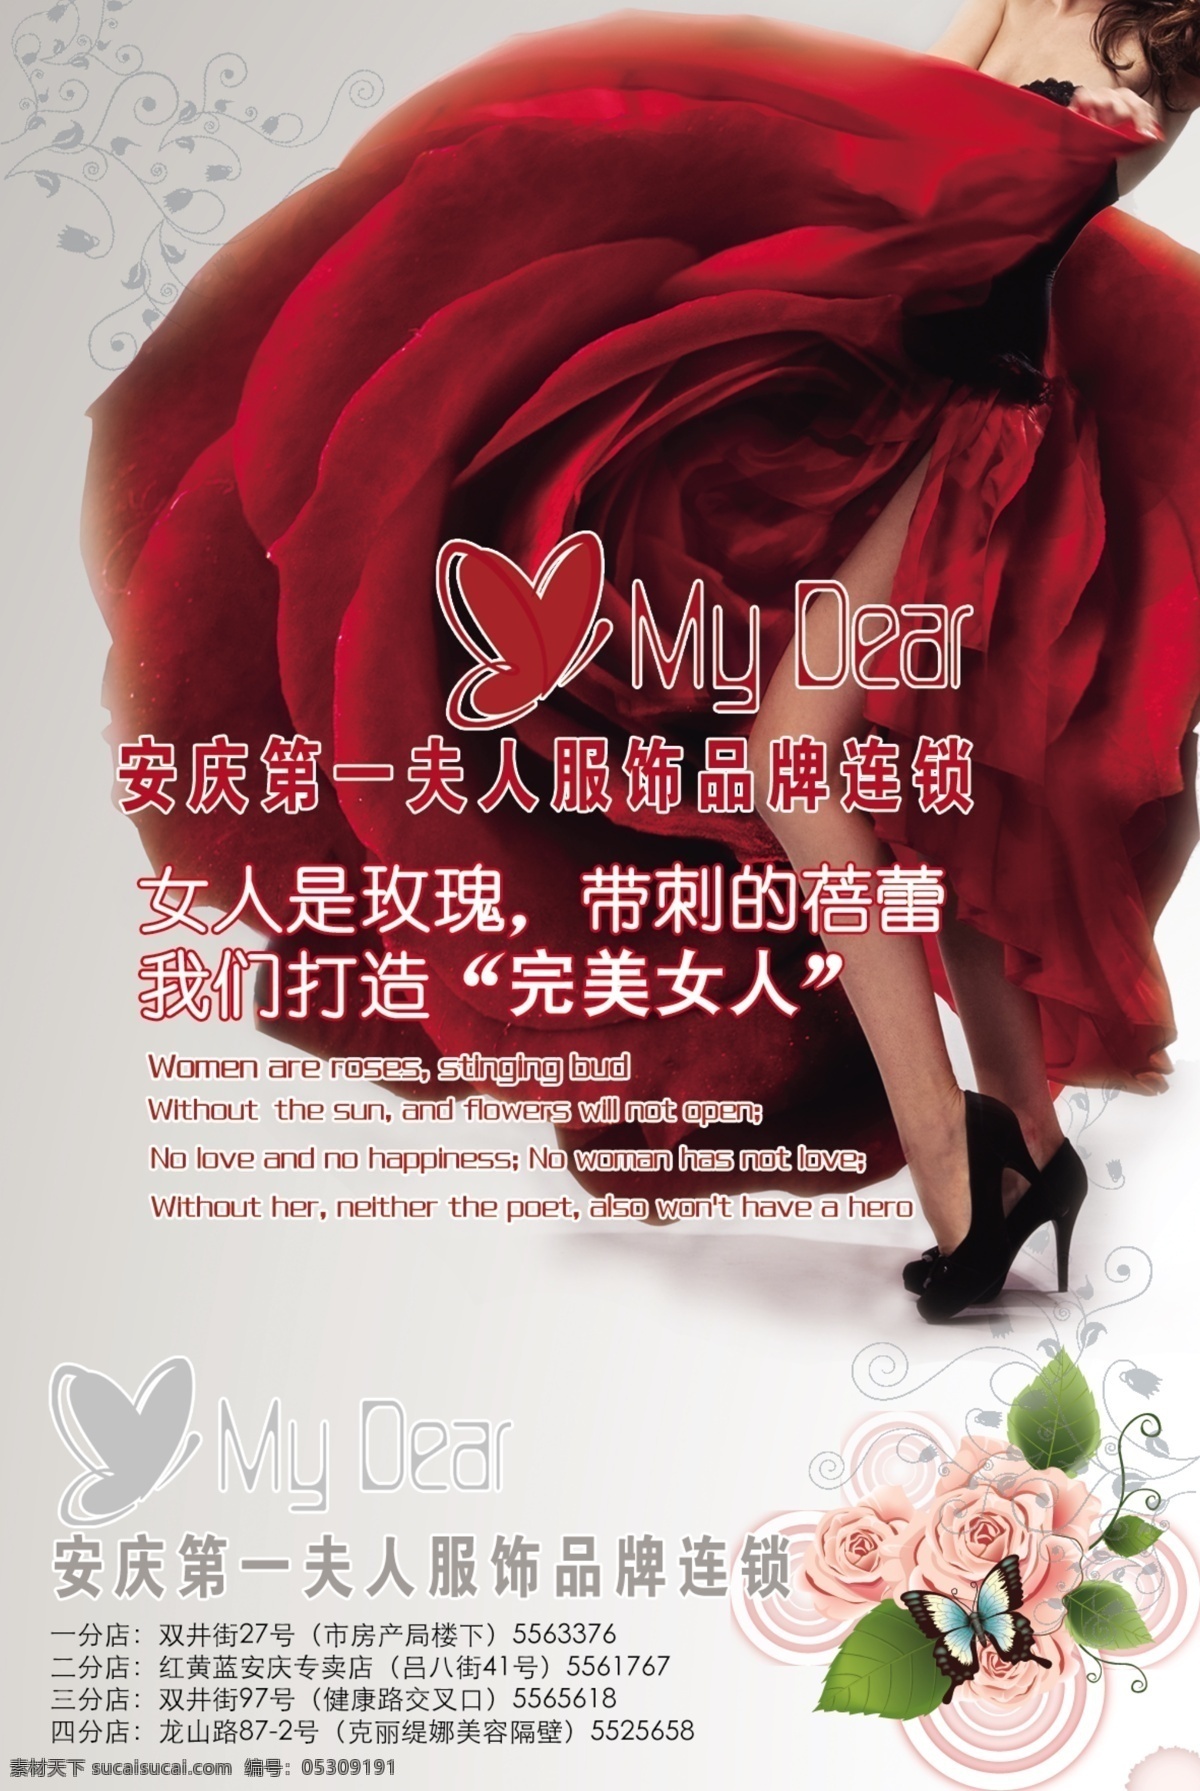 完美女人 女装 服装店宣传 女人如花 玫瑰 裙子 花瓣 蝴蝶 广告设计模板 源文件